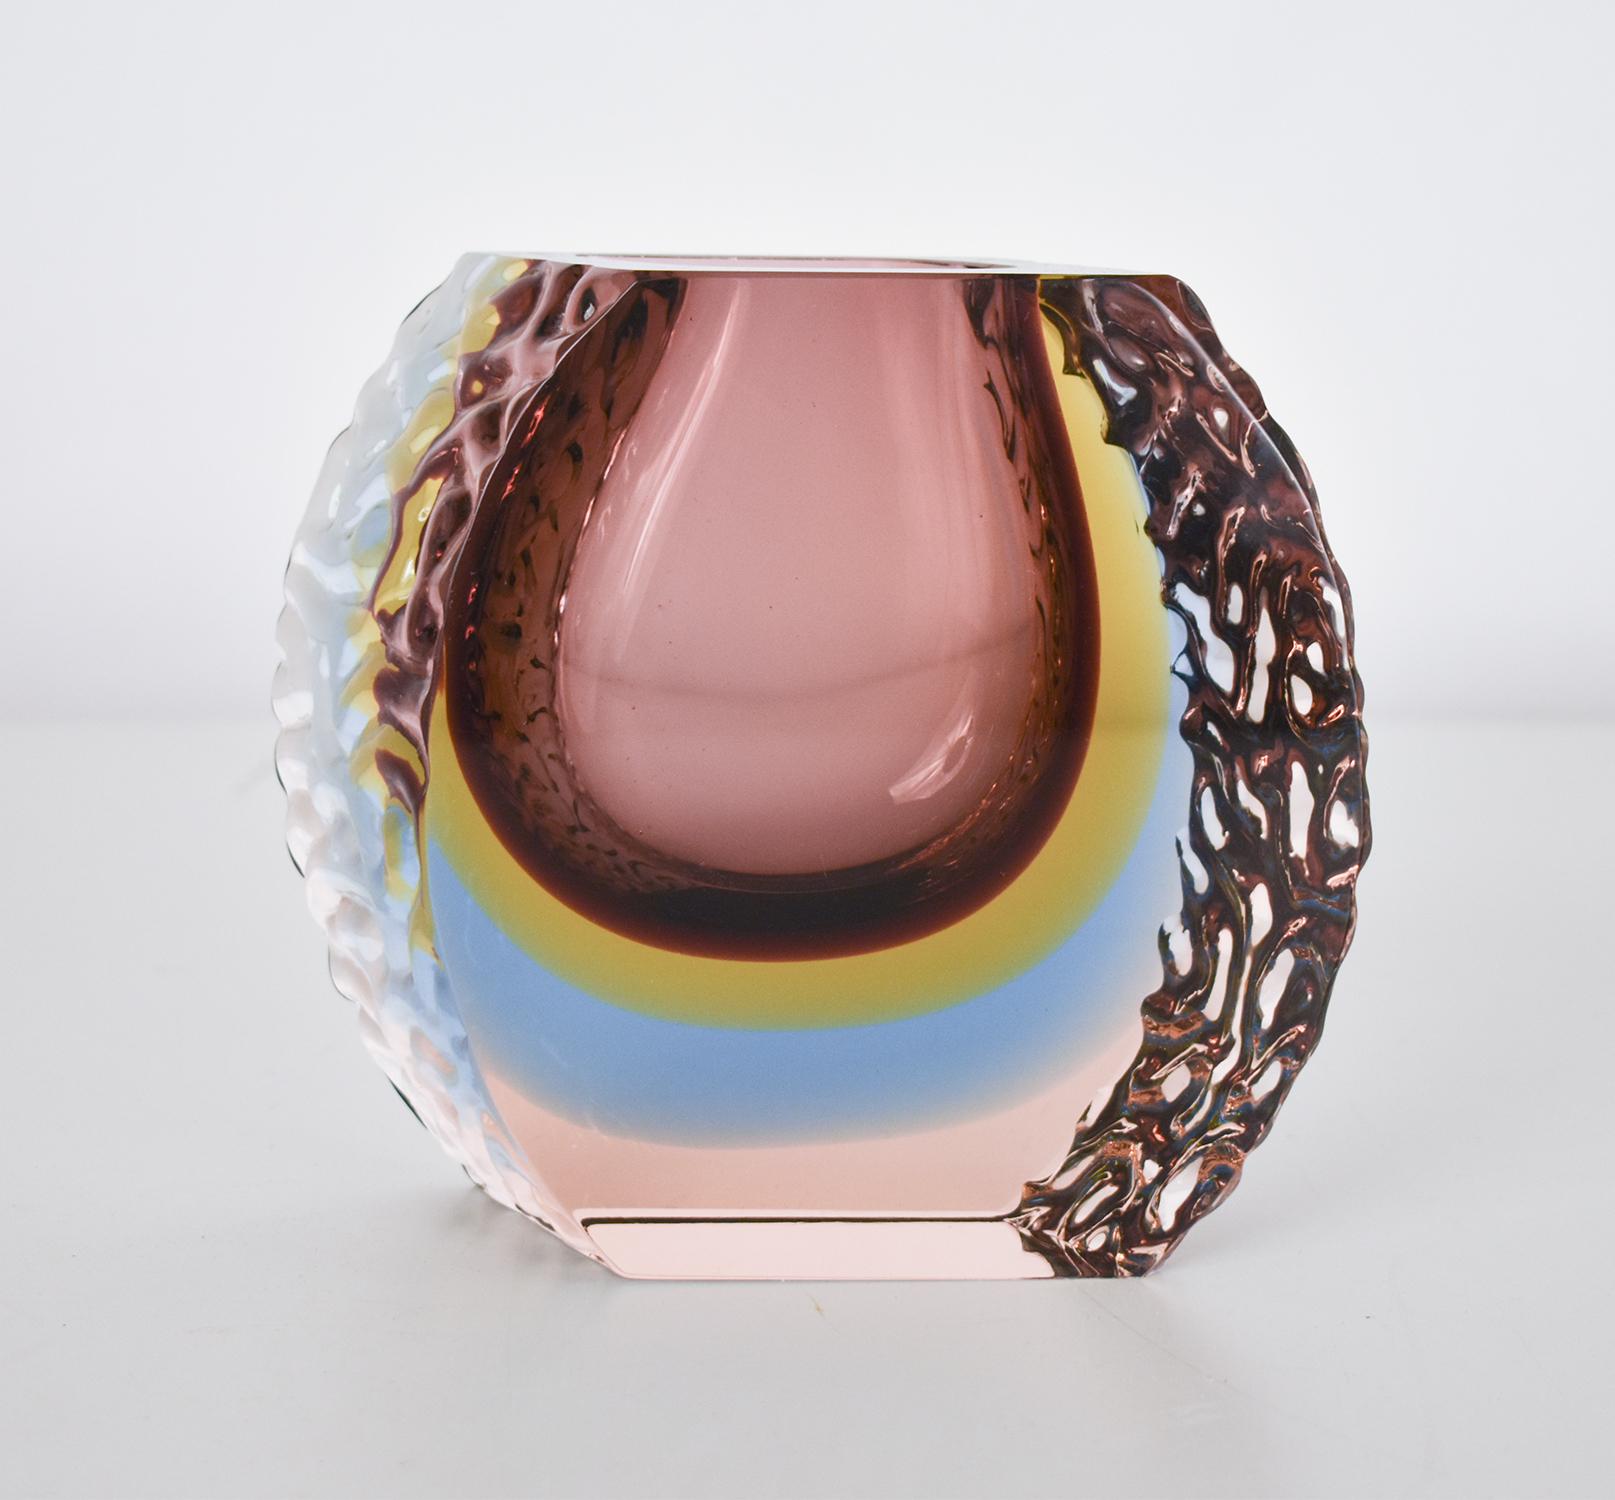  Vase aus Murano-Kunstglas aus der Mitte des Jahrhunderts, Mandruzzato zugeschrieben, ca. 1980er Jahre. Die 
 Die Kombination der drei Farben ist faszinierend.
 Lila, gelb und blau und auch ein helleres Lila am unteren Rand.
 Je mehr Farben, desto